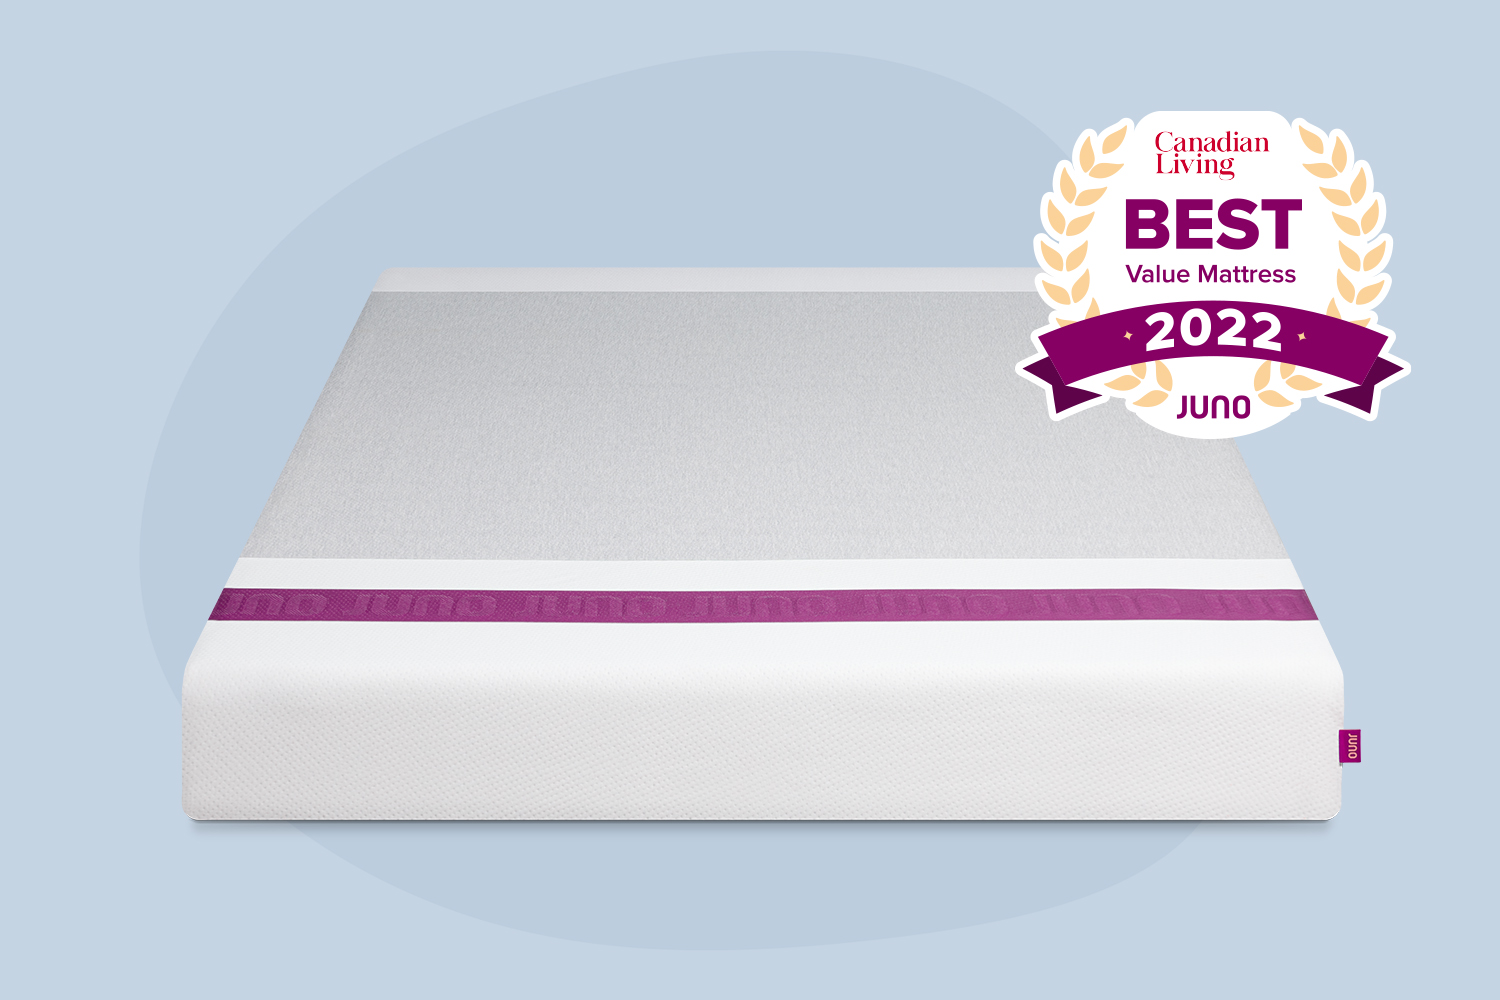 Juno mattress with Canadian Living - Best Value Mattress 2022 award